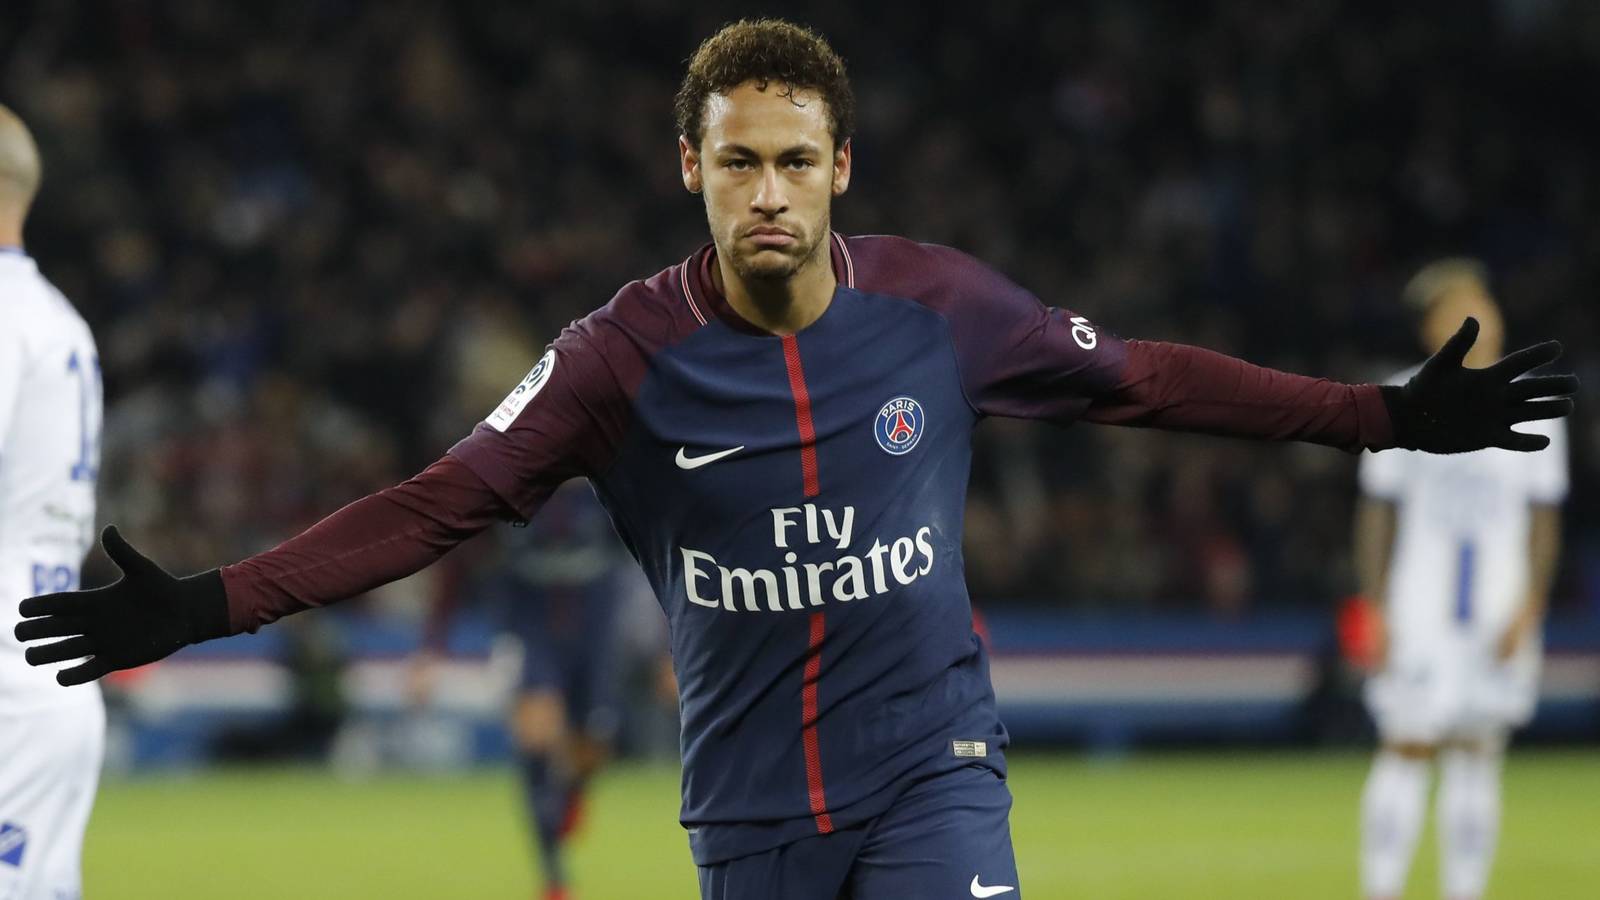 Neymar siempre ha sido una cuestión pendiente desde que en 2013 el Barcelona hiciese trampas para traerle a su equipo, como demostró posteriormente la justicia. El brasileño sigue siendo del gusto de la planta noble del Real Madrid.